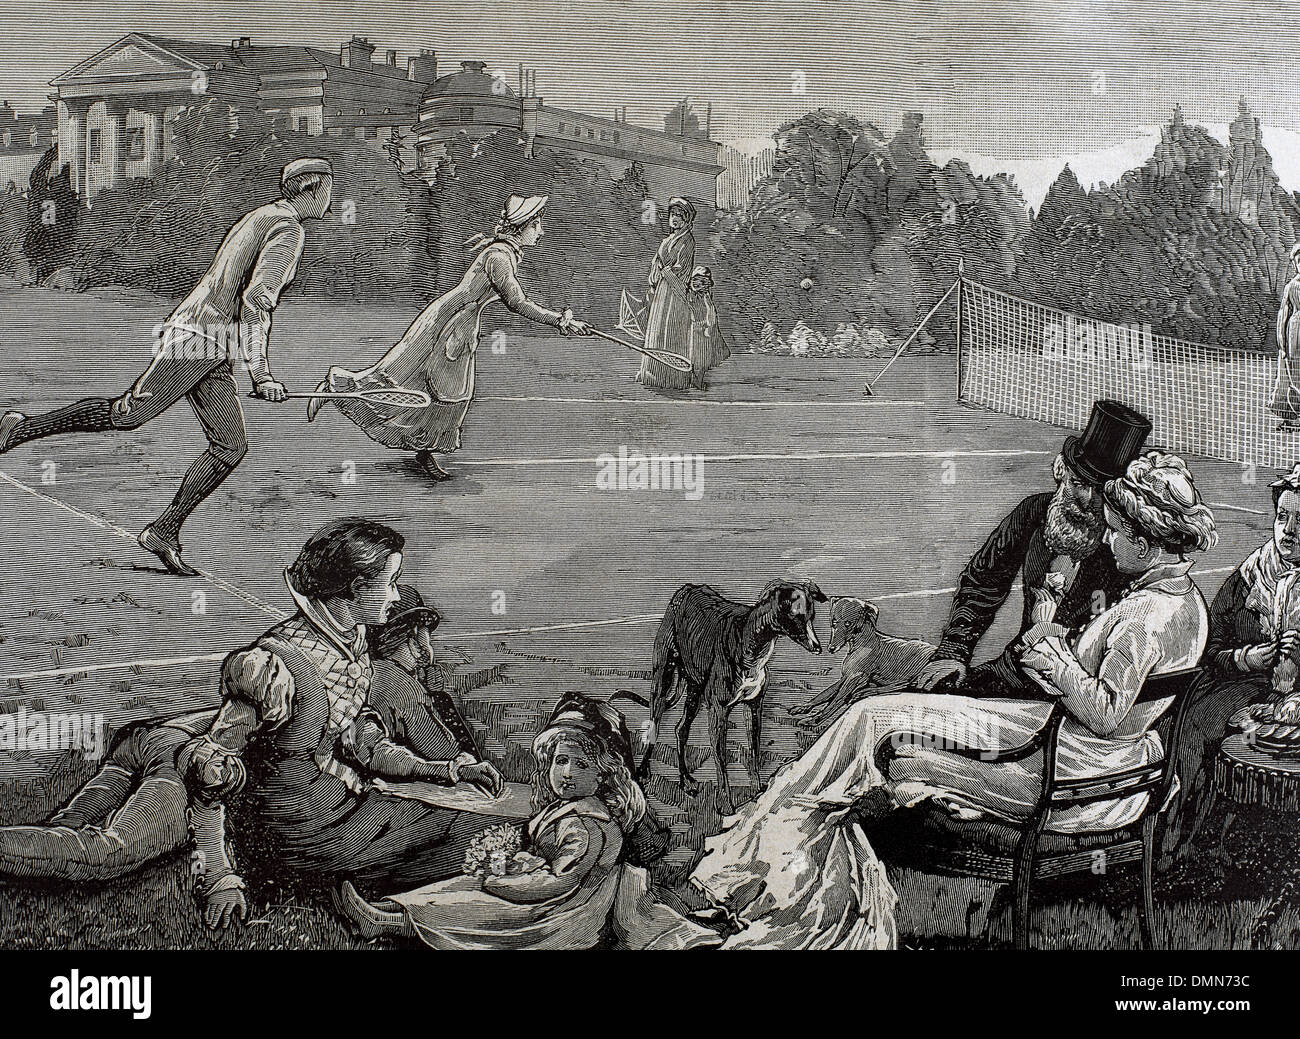 L'Angleterre. Birmingham. 19e siècle. Court de tennis sur gazon. Gravure de Rico, 'La Ilustracion Espanola y Americana', 1880. Banque D'Images